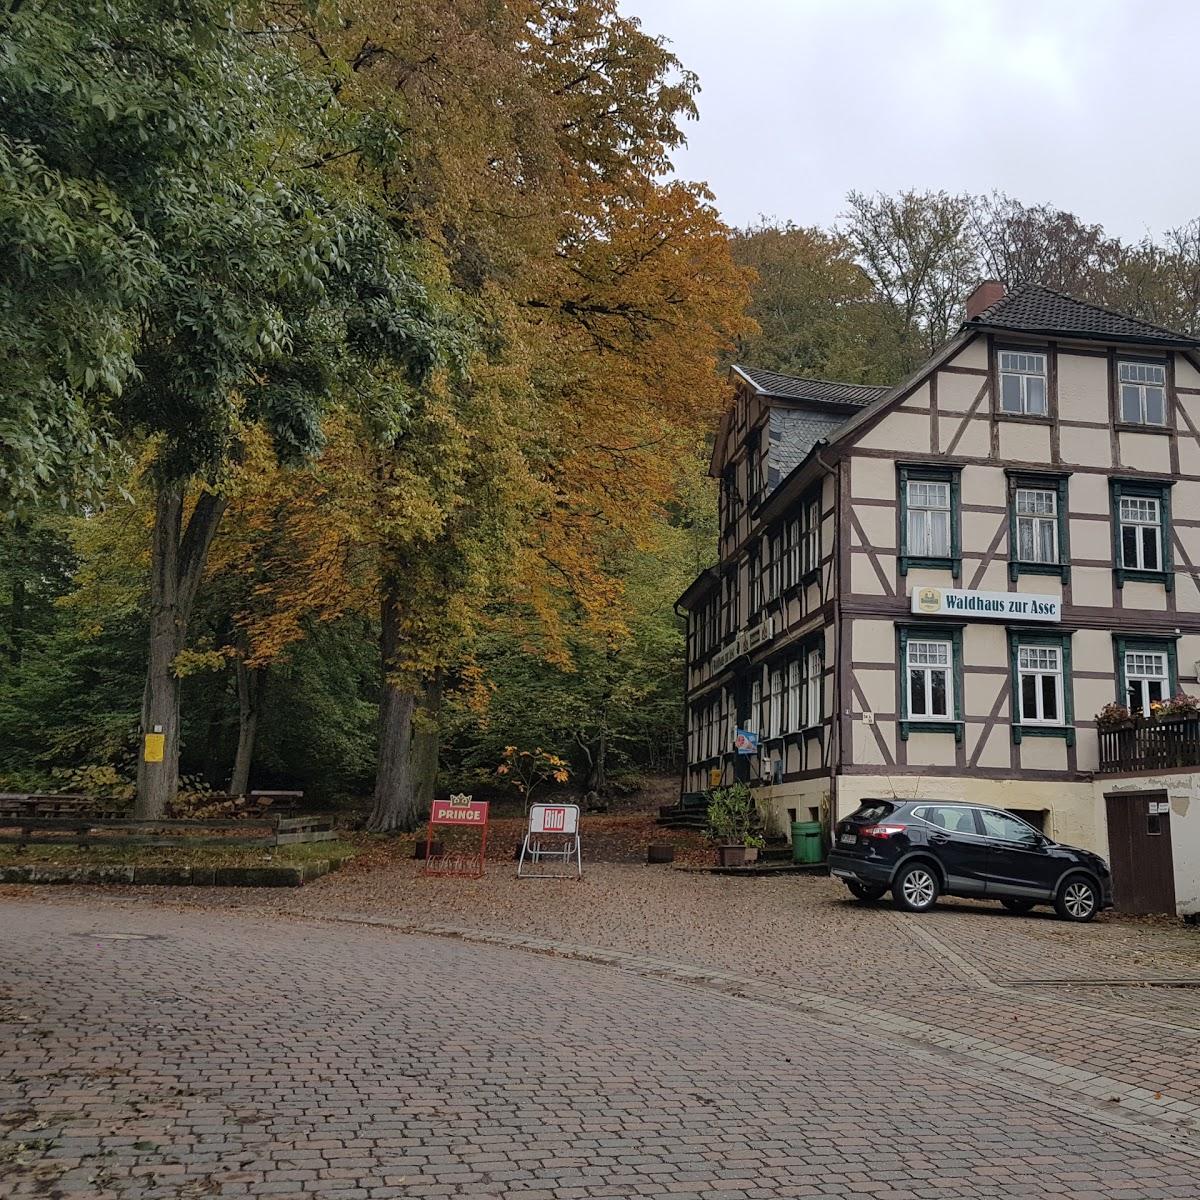 Restaurant "Waldhaus zur Asse" in Wittmar